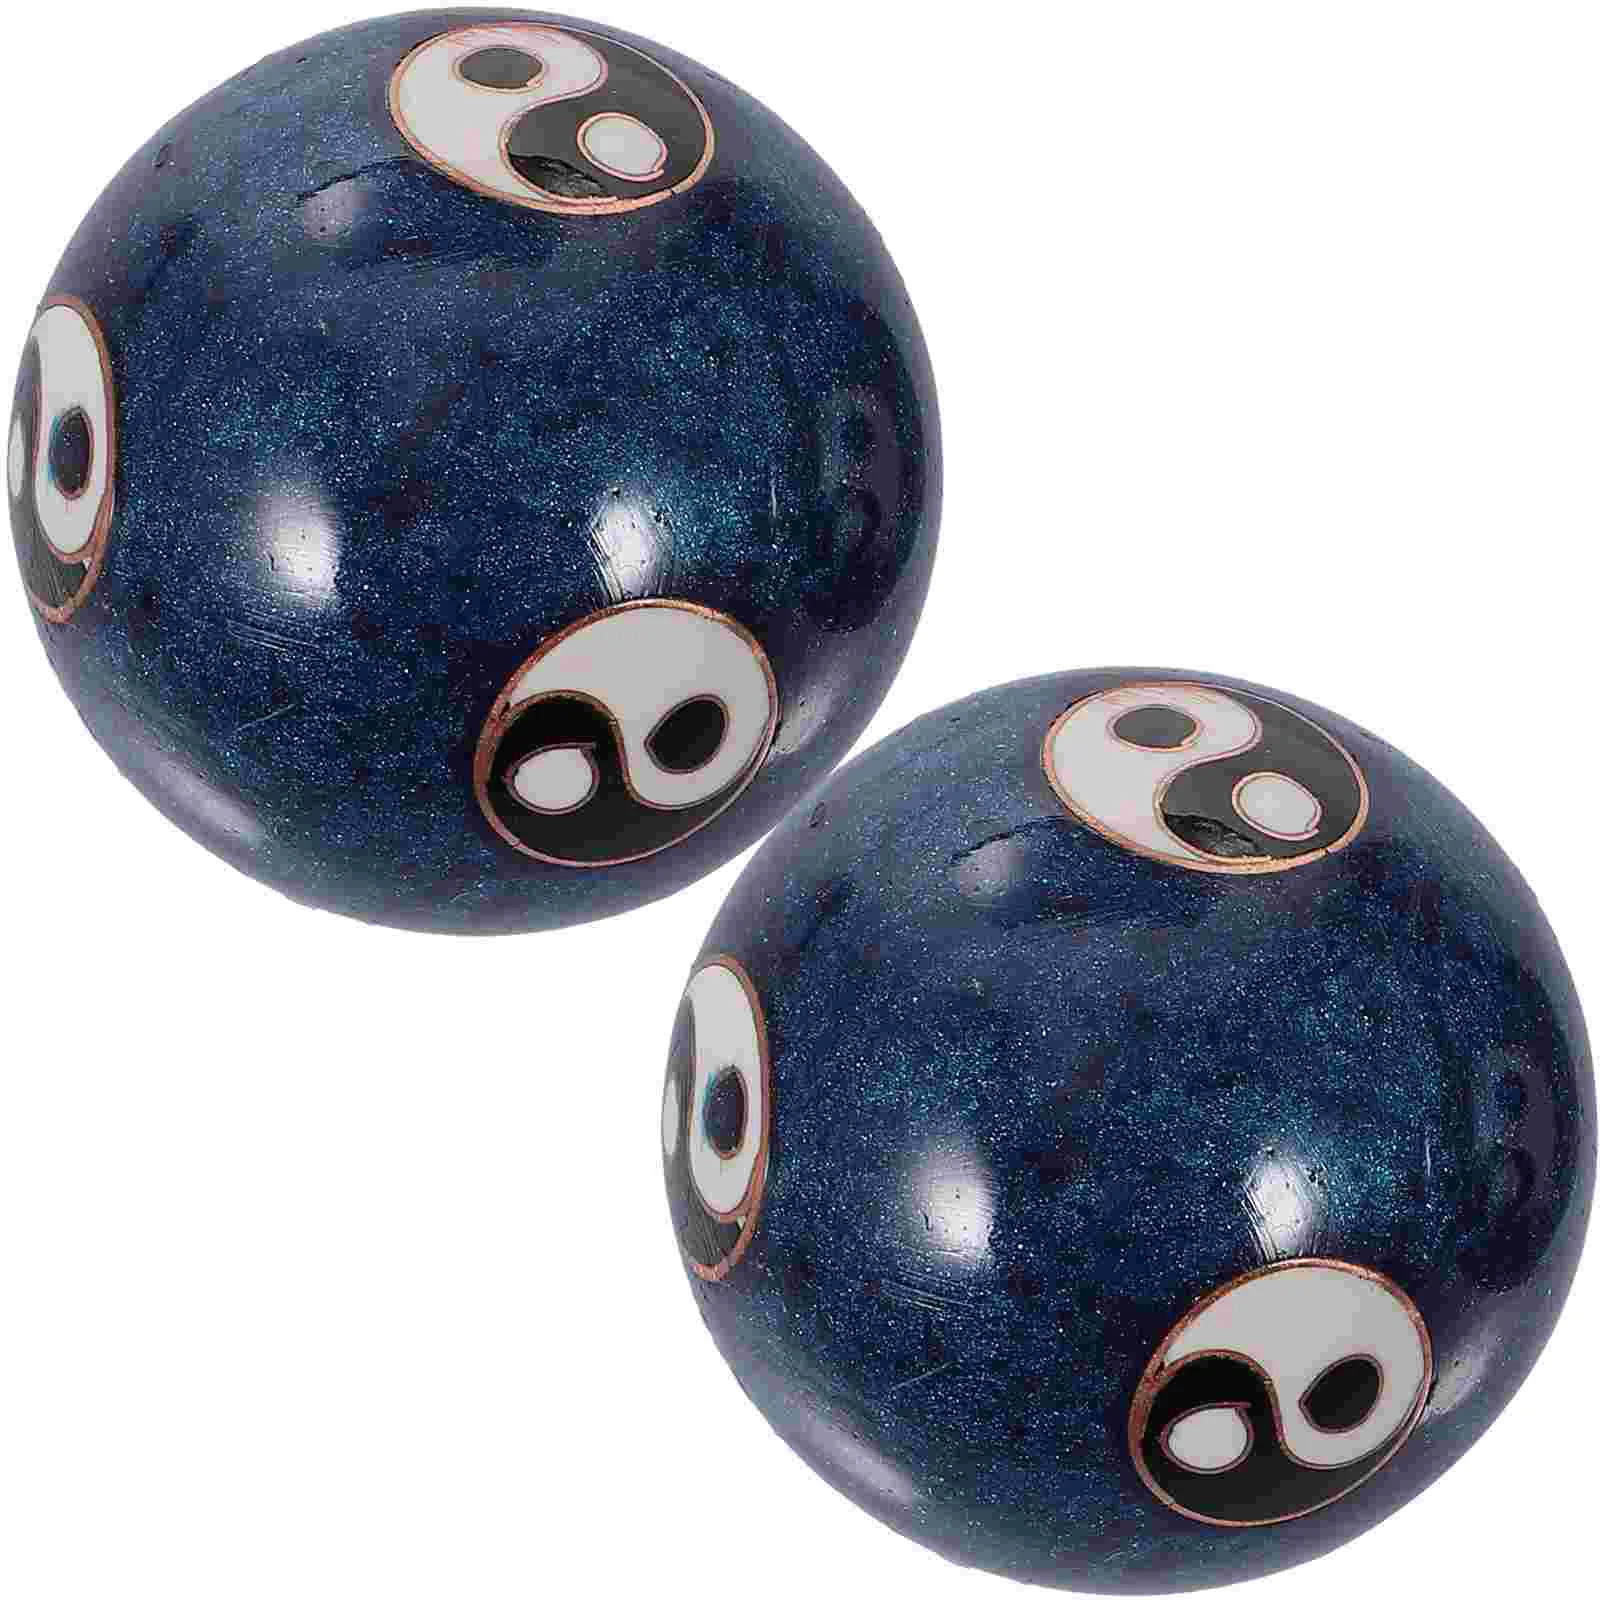 

Эмалированные китайские шарики Tai Chi с рисунком, голубые здоровые шарики для упражнений, массажные шарики, снятие стресса, упражнения для рук, 1 комплект